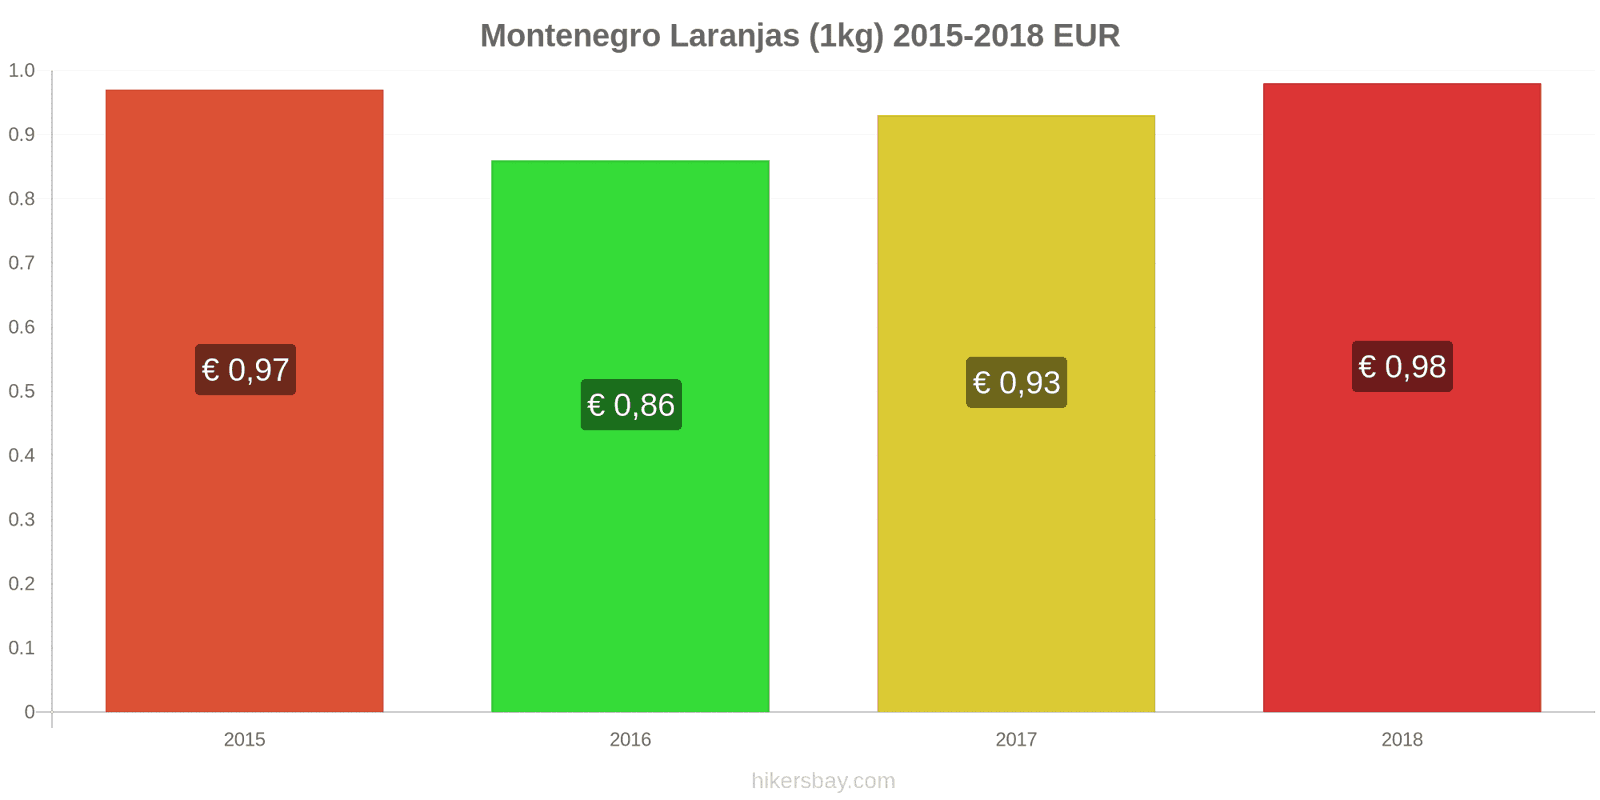 Montenegro mudanças de preços Laranjas (1kg) hikersbay.com